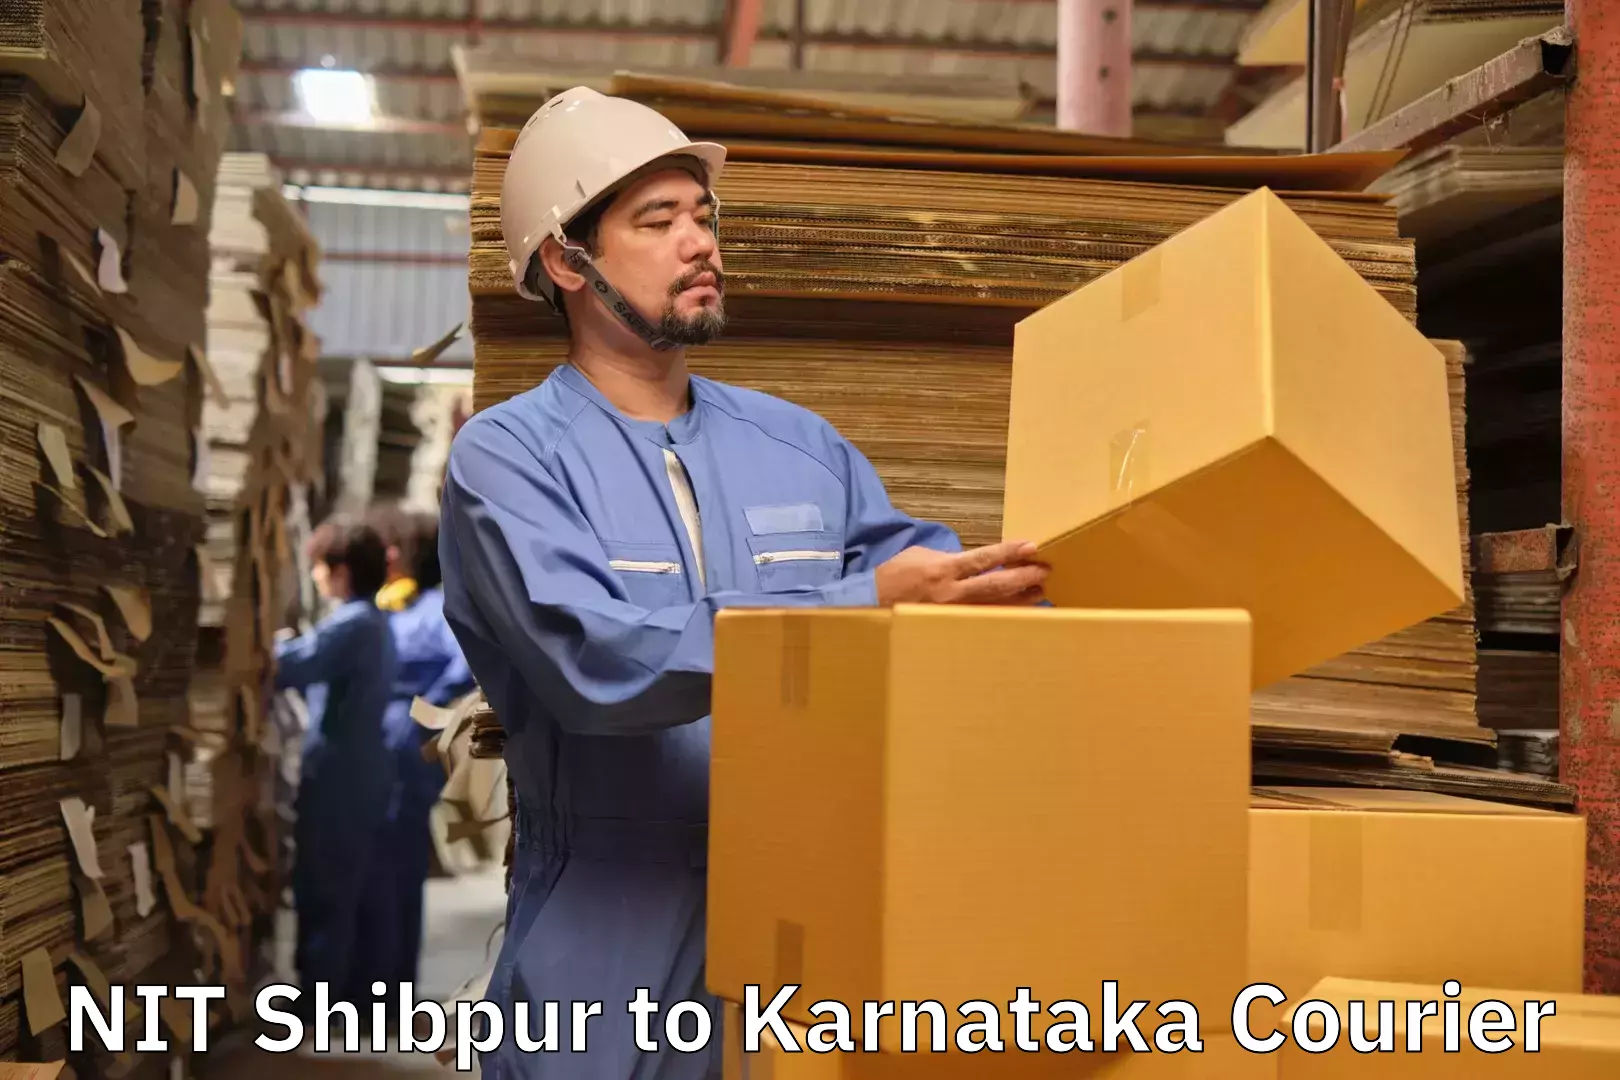 Luggage shipping guide NIT Shibpur to Kanjarakatte